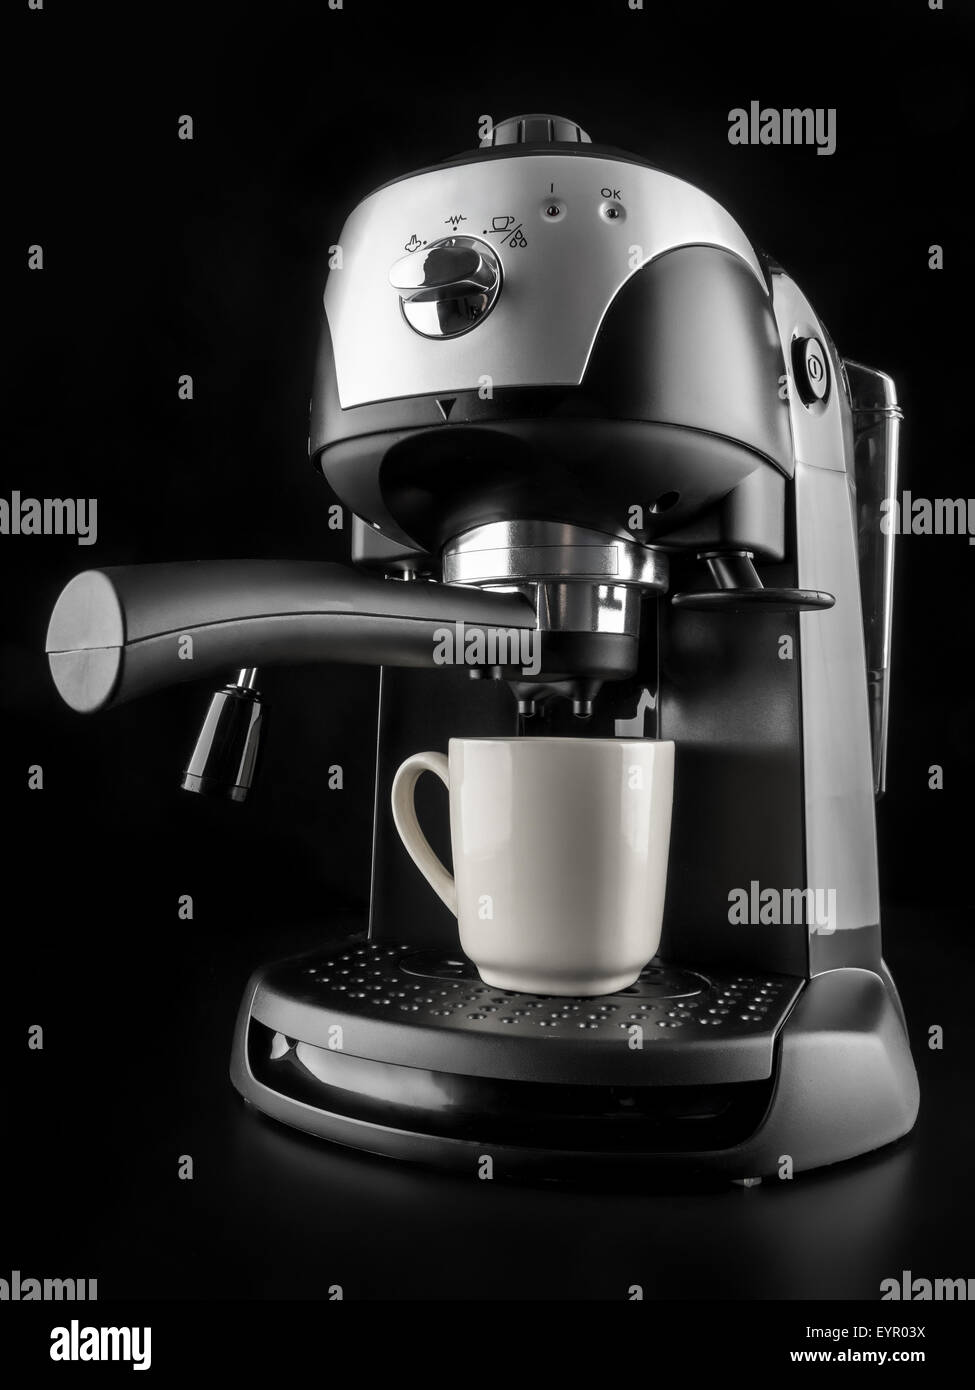 Máy pha cà phê mang lại cho bạn những giây phút tuyệt vời, đầy thư giãn và ngọt ngào. Với nhiều kiểu dáng và chức năng khác nhau, máy pha cà phê làm hài lòng cả những tín đồ cà phê khó tính nhất. Hãy cùng tìm hiểu và khám phá những chiếc máy pha cà phê đỉnh cao của công nghệ qua hình ảnh đầy sức hút này.